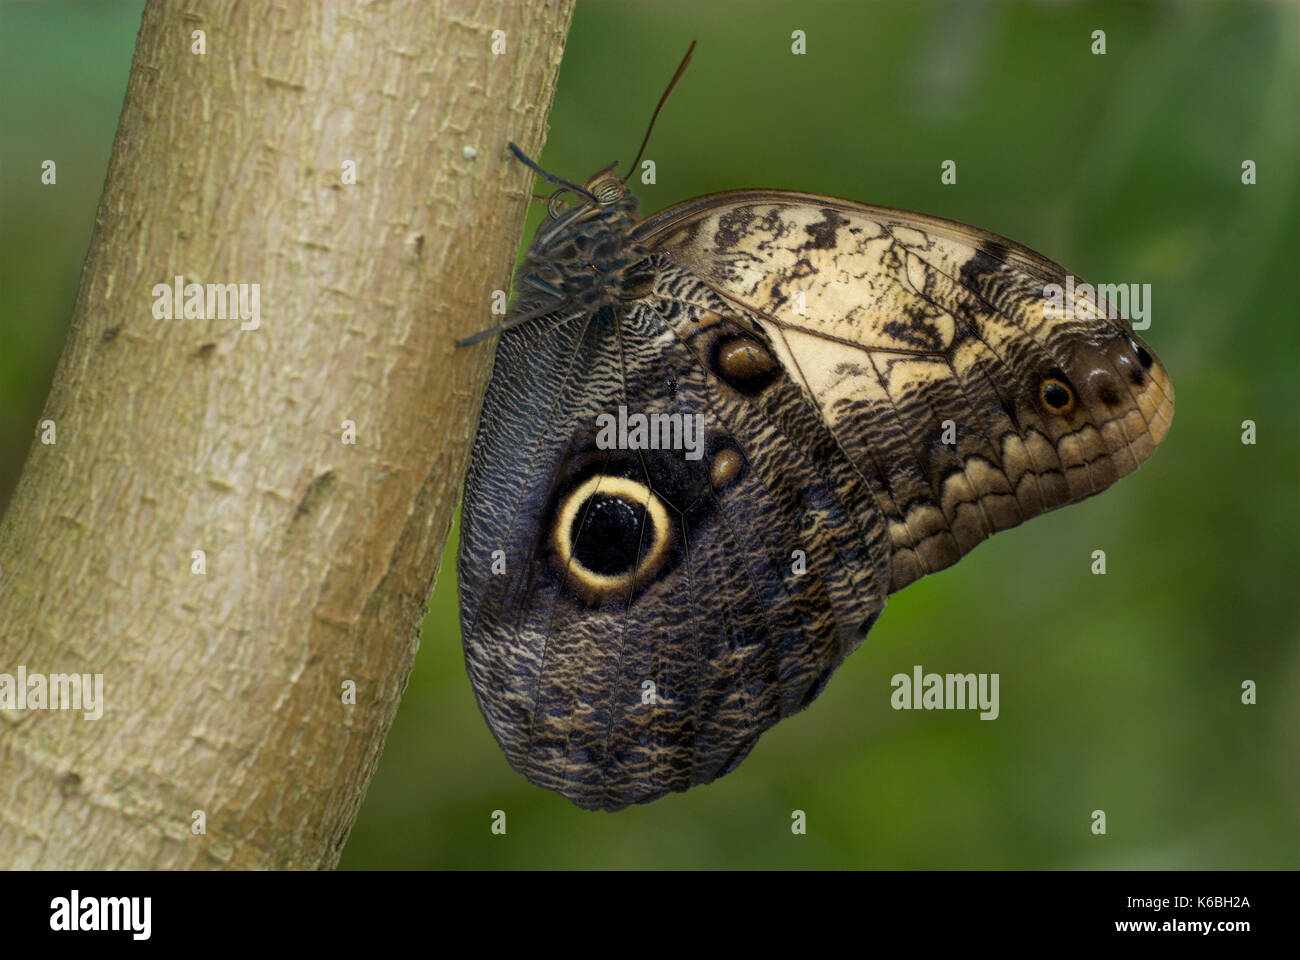 Owl Butterfly, Caligo Arten, auf Baumstamm zeigt falsche Augenflecken auf Flügeln thront, Stockfoto